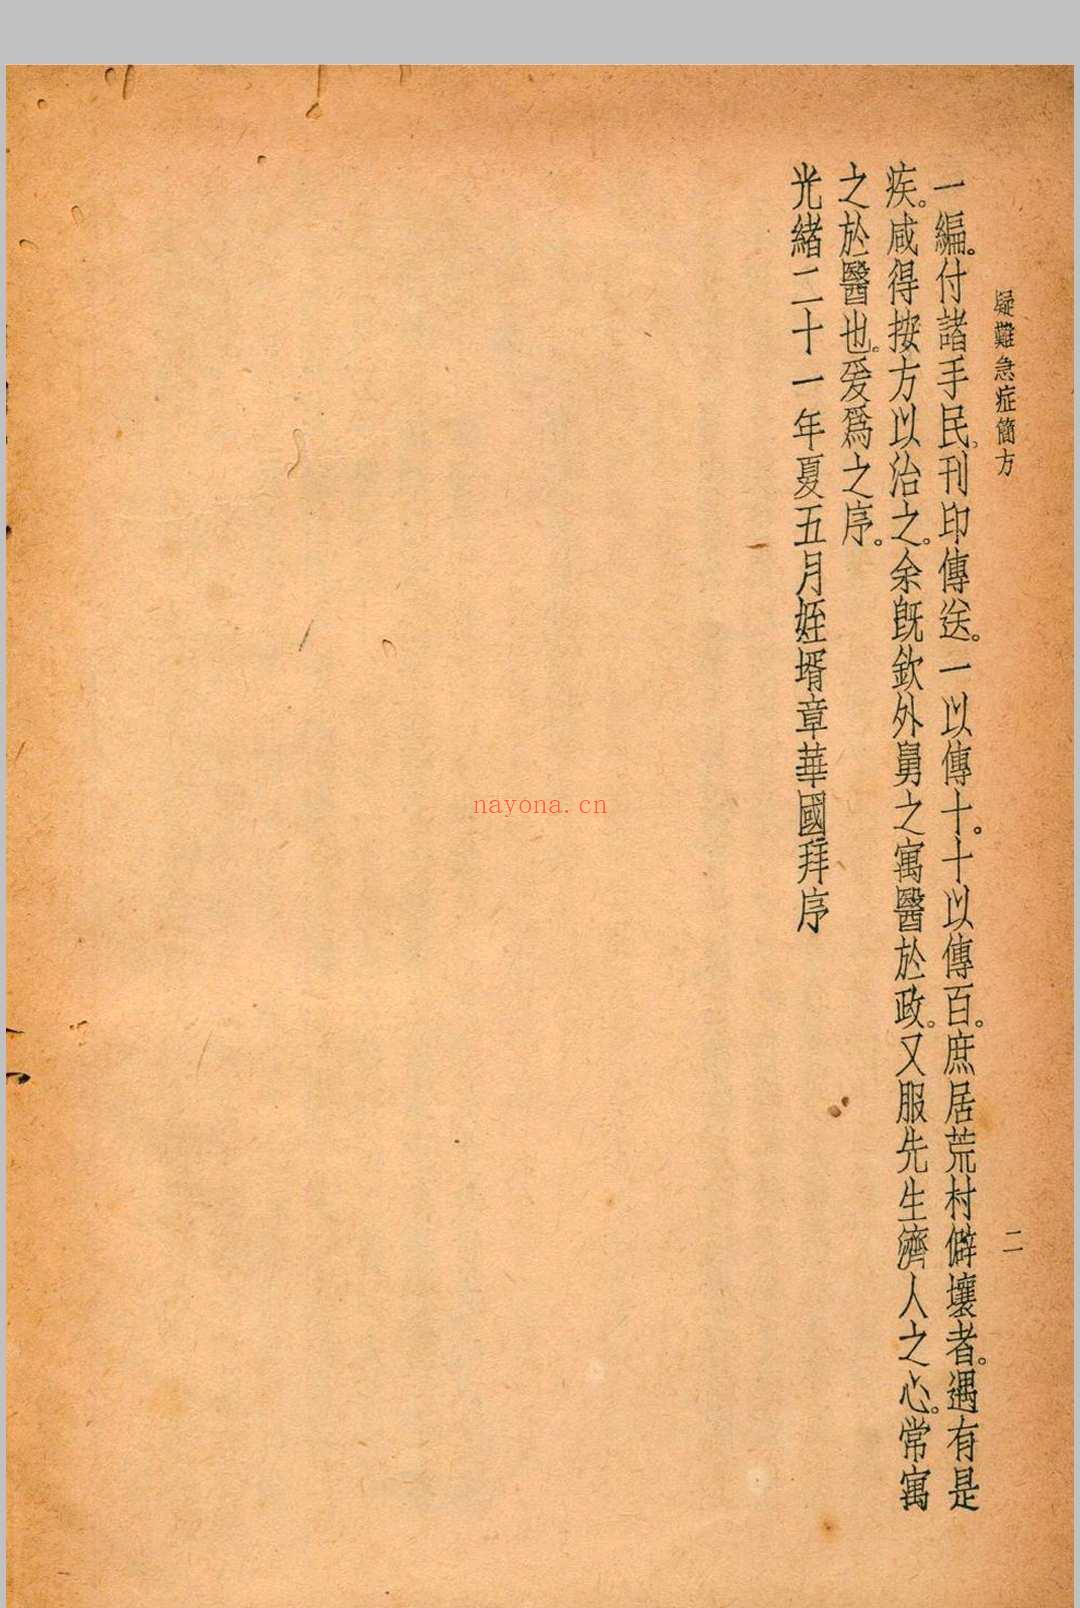 珍本医书集成 第十一册 裘吉生主编 1936 世界书局